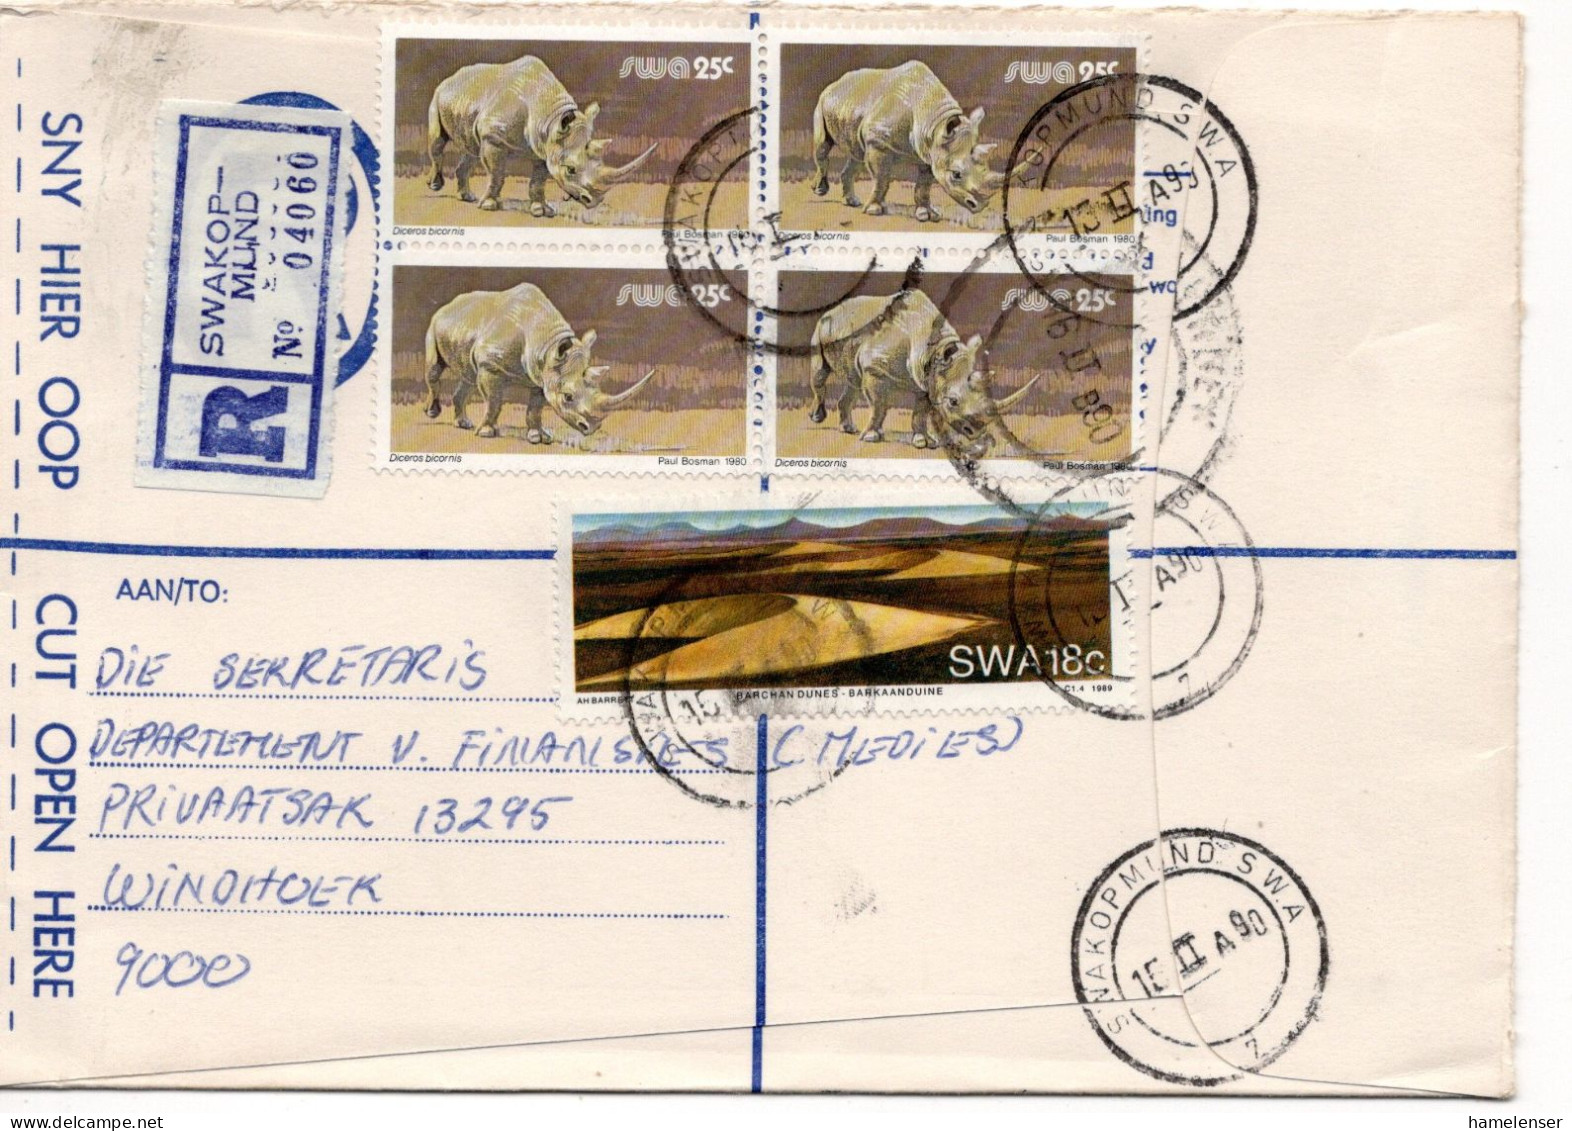 69261 - Südwestafrika - 1990 - 25c Nashorn 田 MiF A R-Bf SWAKOPMUND -> WINDHOEK - Südwestafrika (1923-1990)